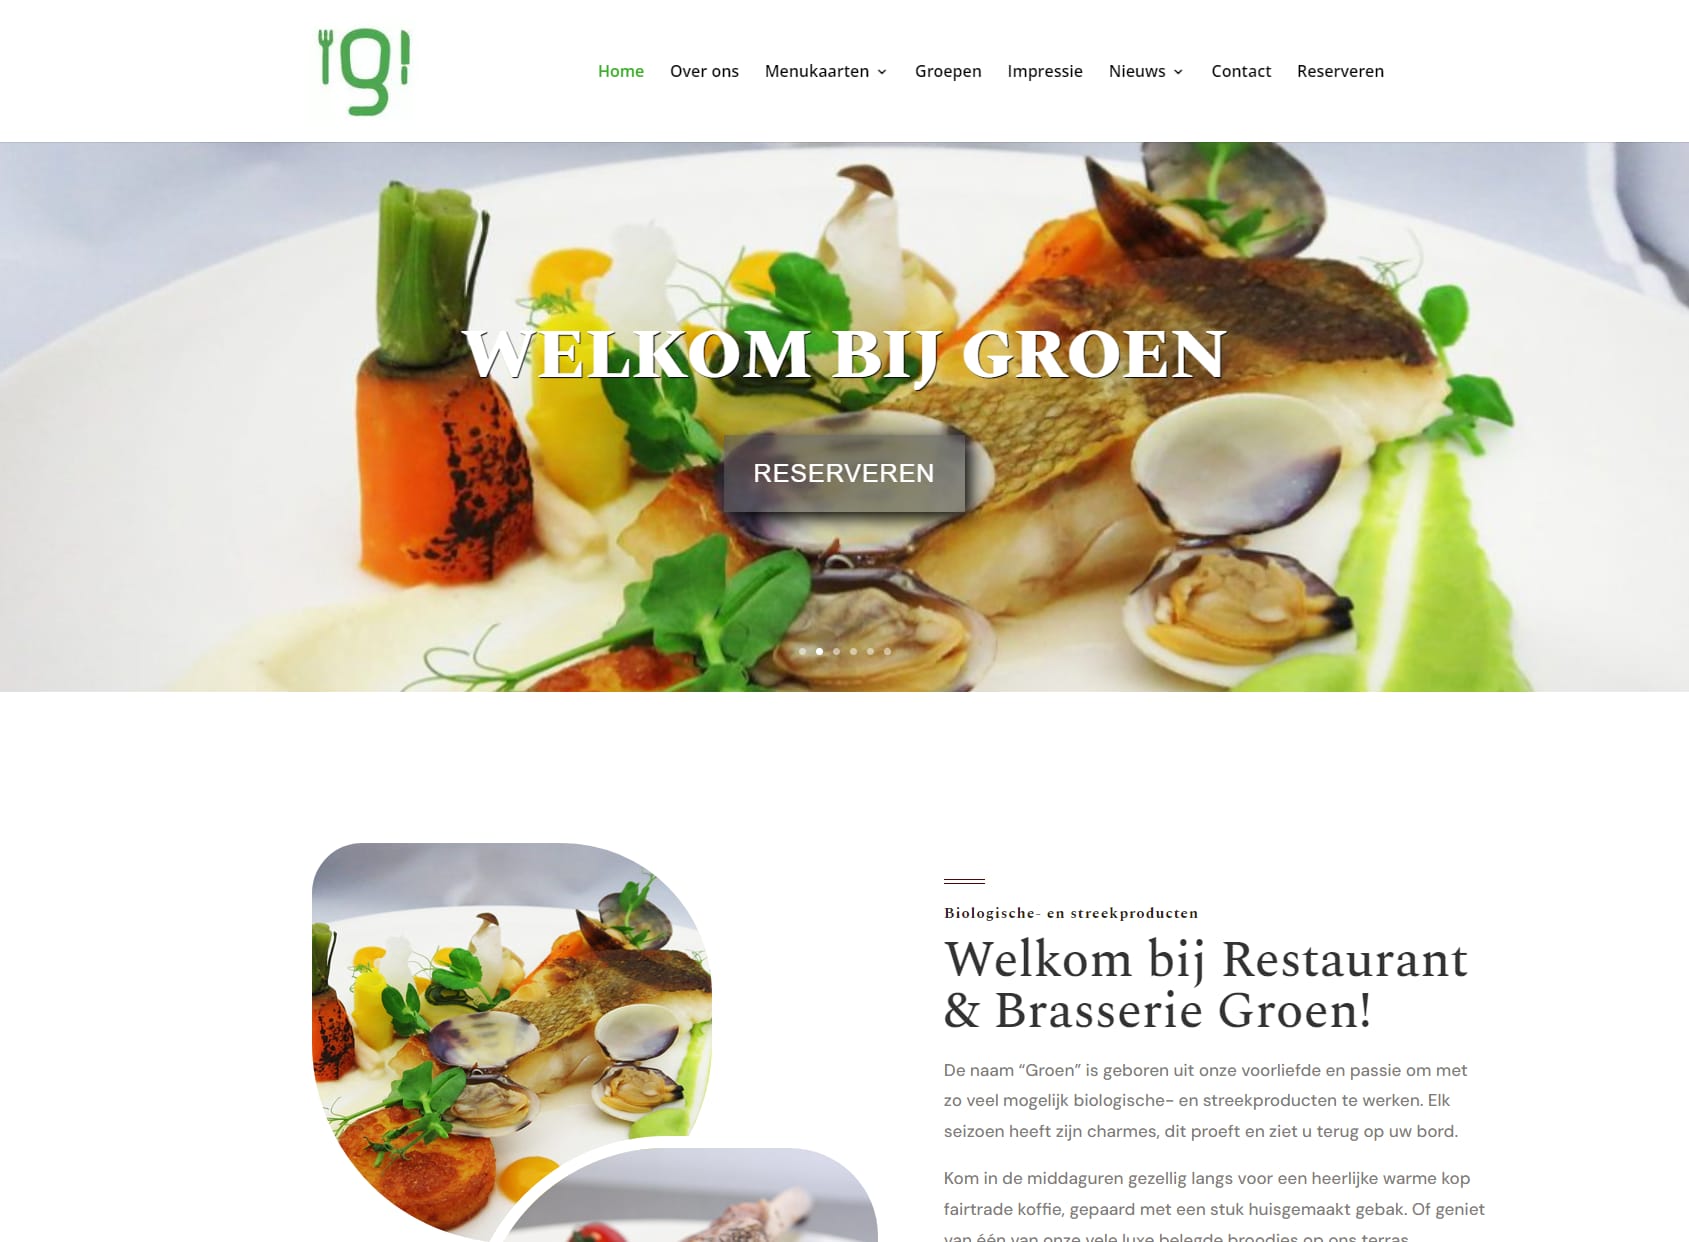 Restaurant & Brasserie Groen